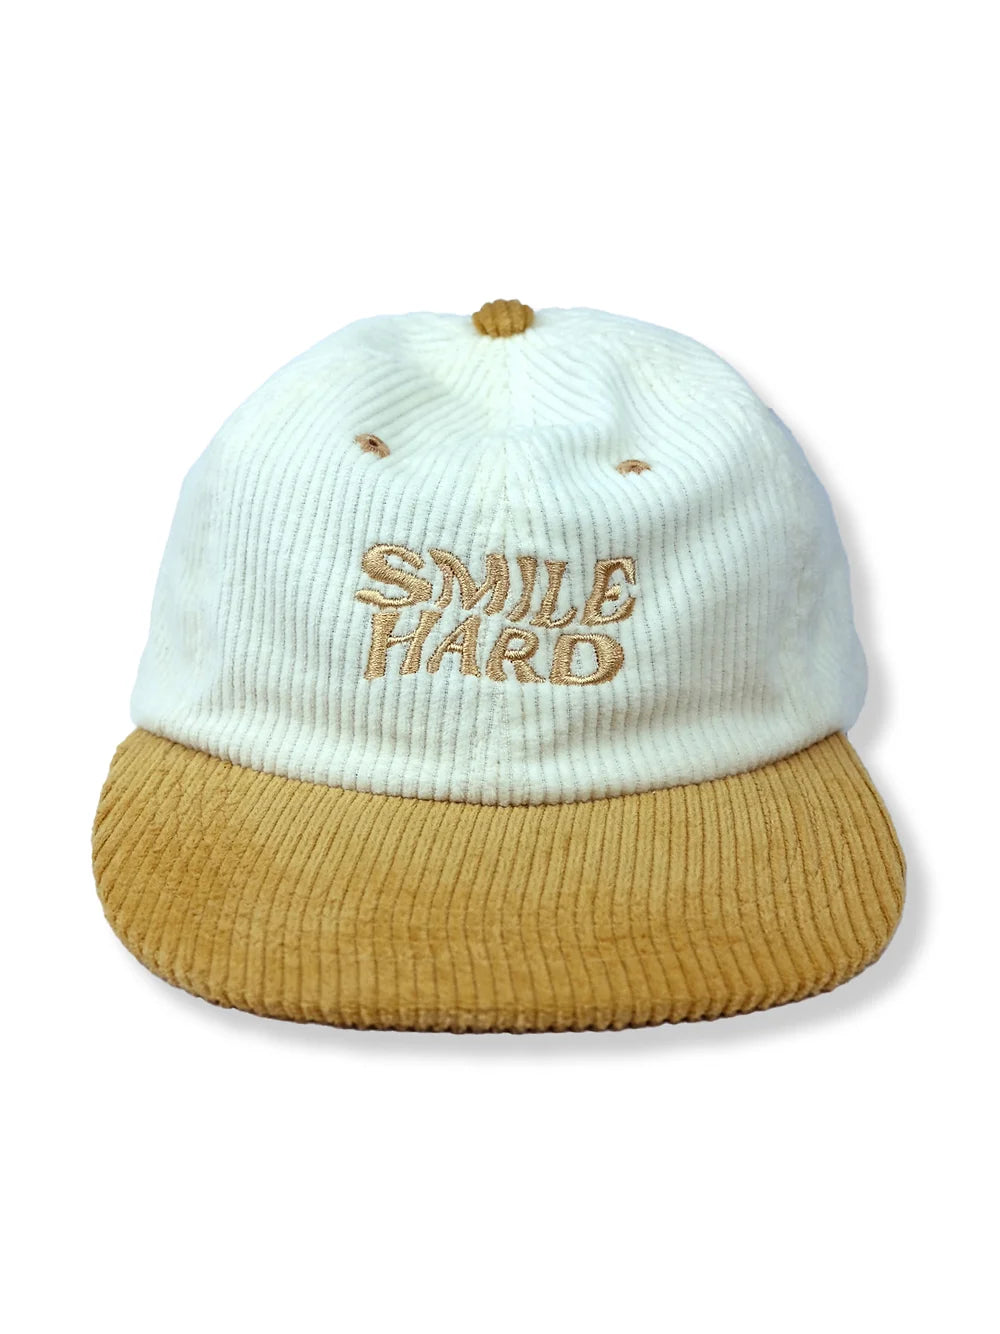 Gold Smile Hard Hat